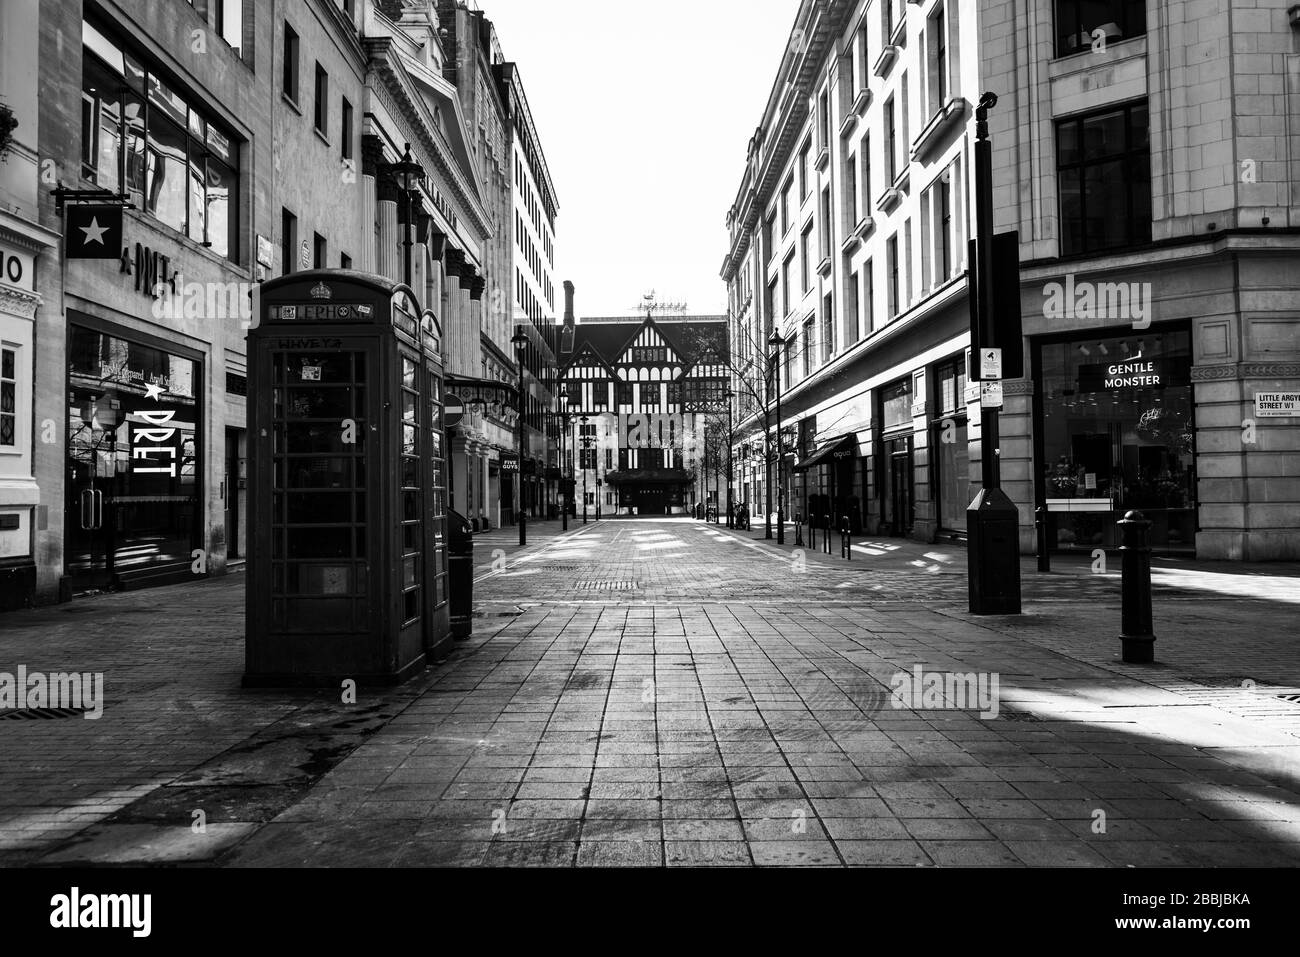 Strada vuota a Oxford Circus, Londra, Regno Unito Foto Stock